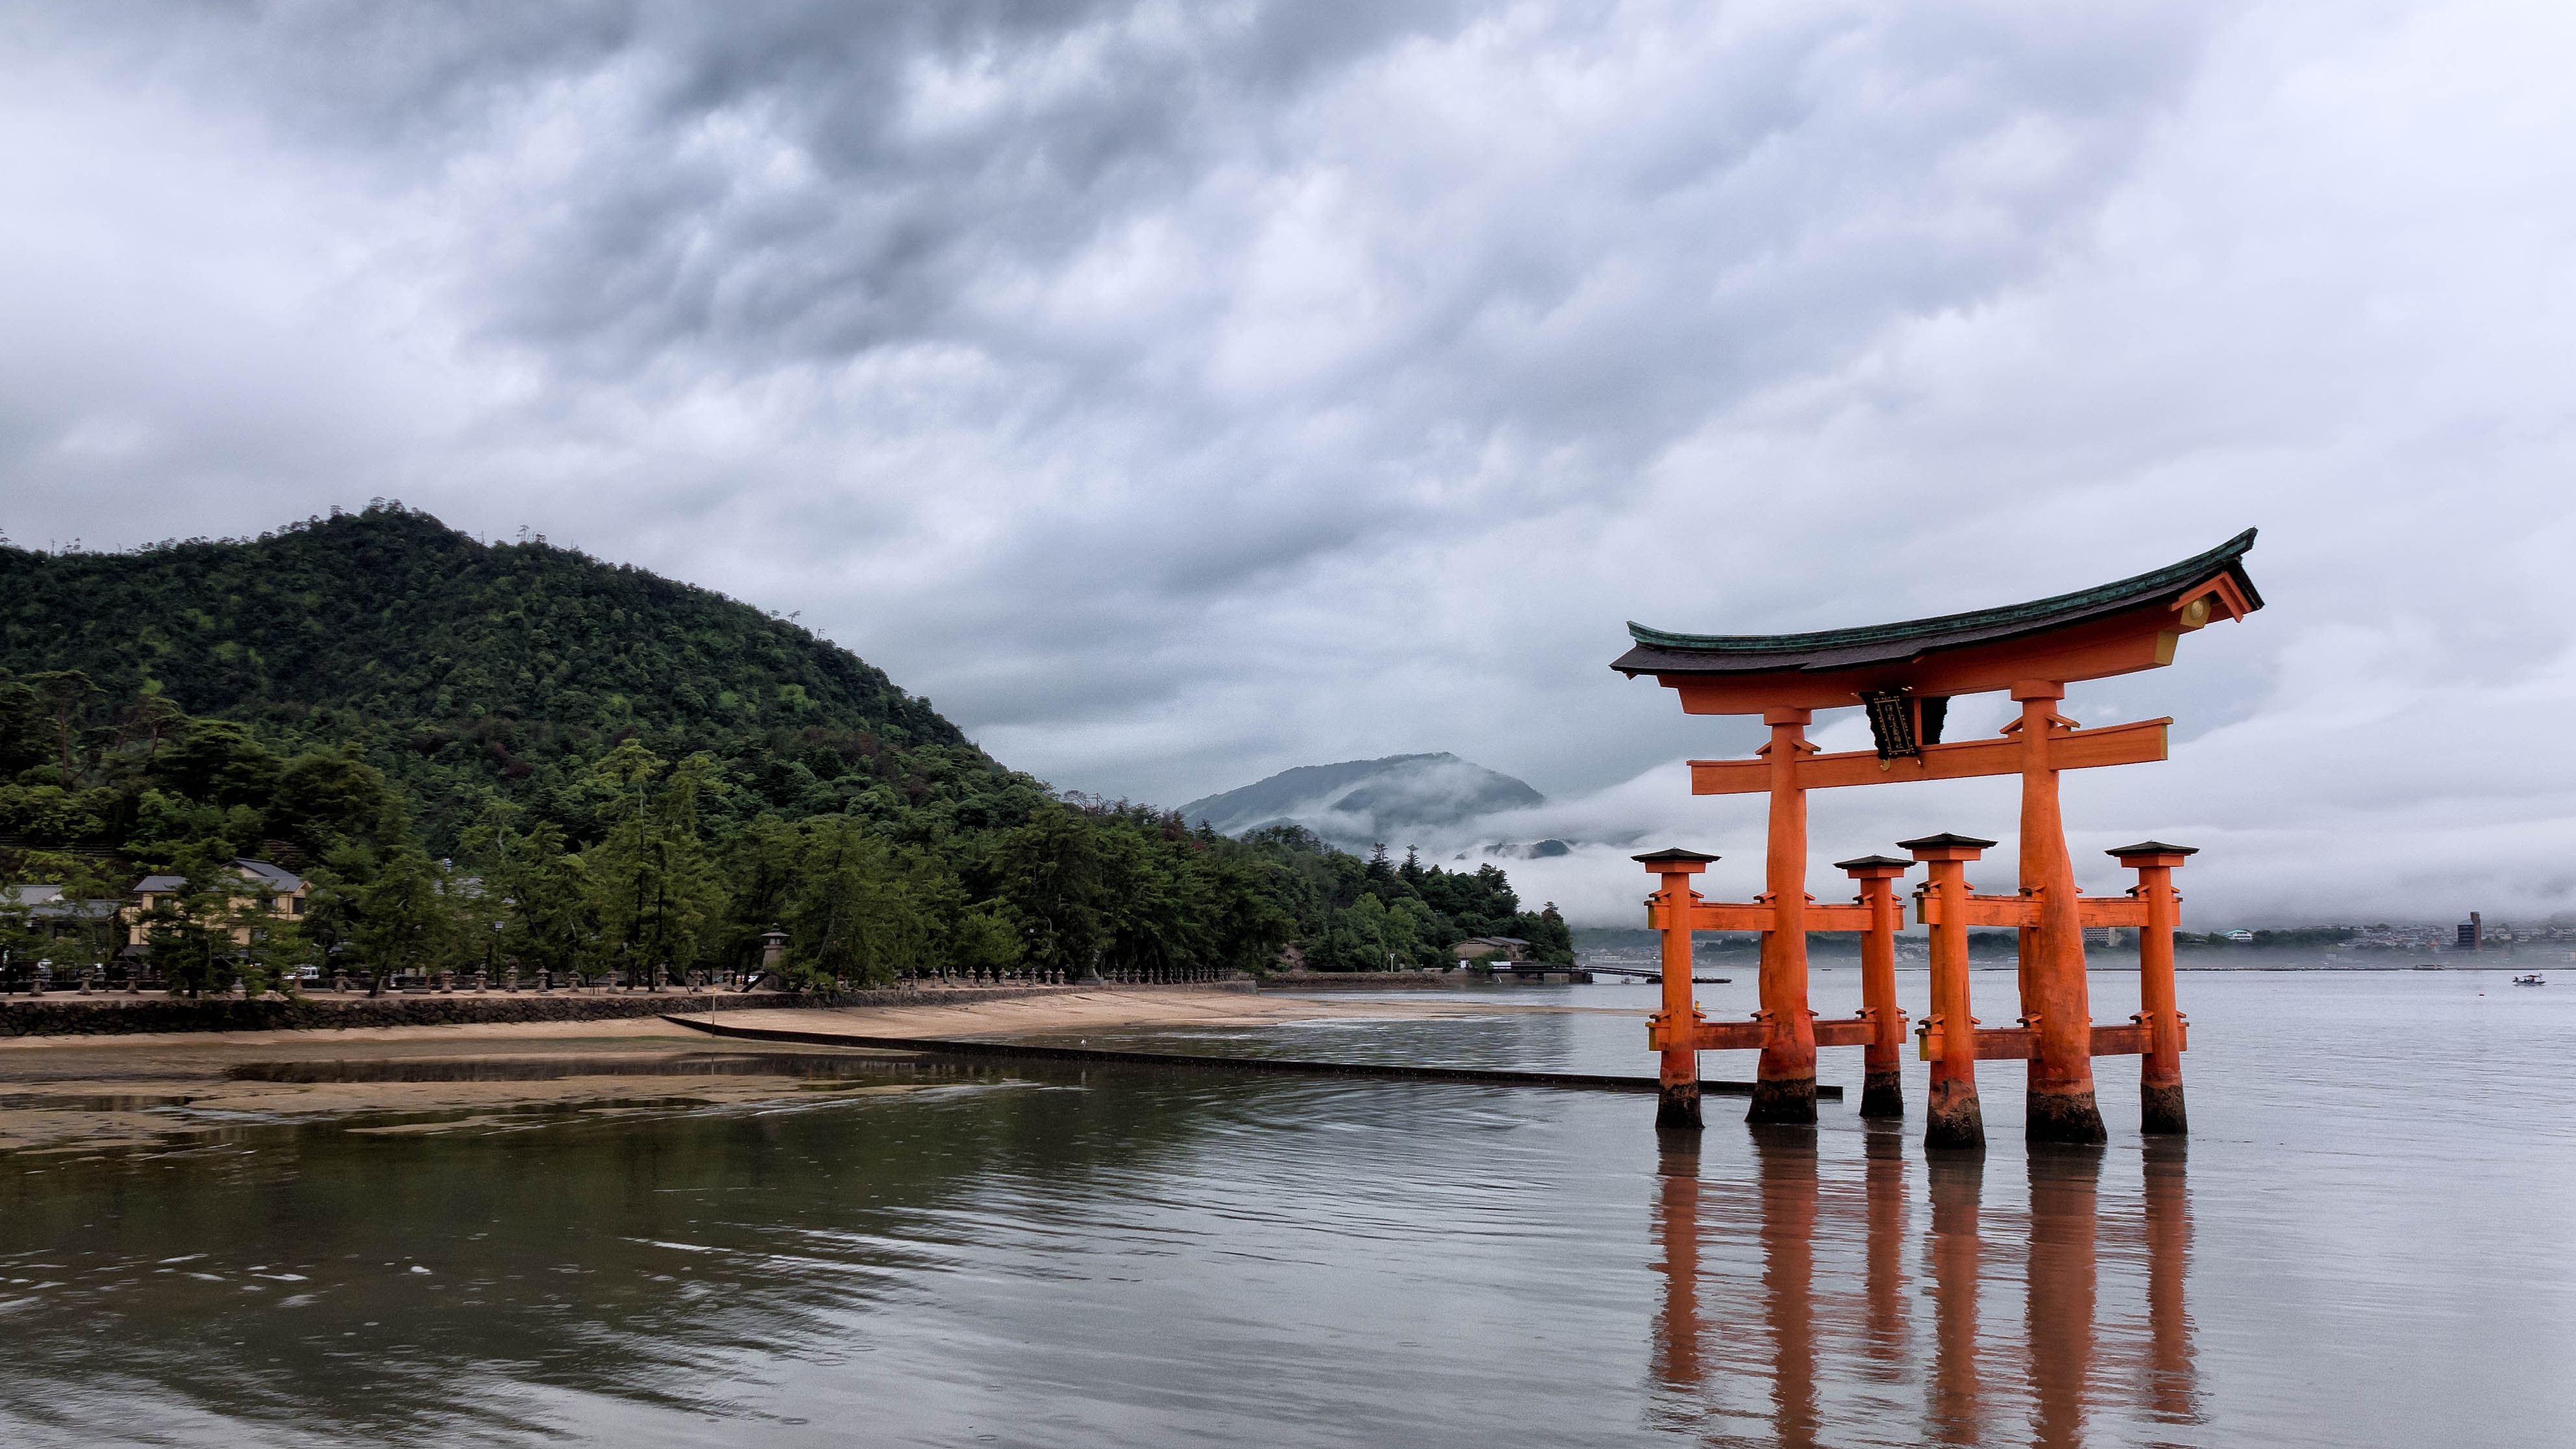 Itsukushima Shrine torii gate free image